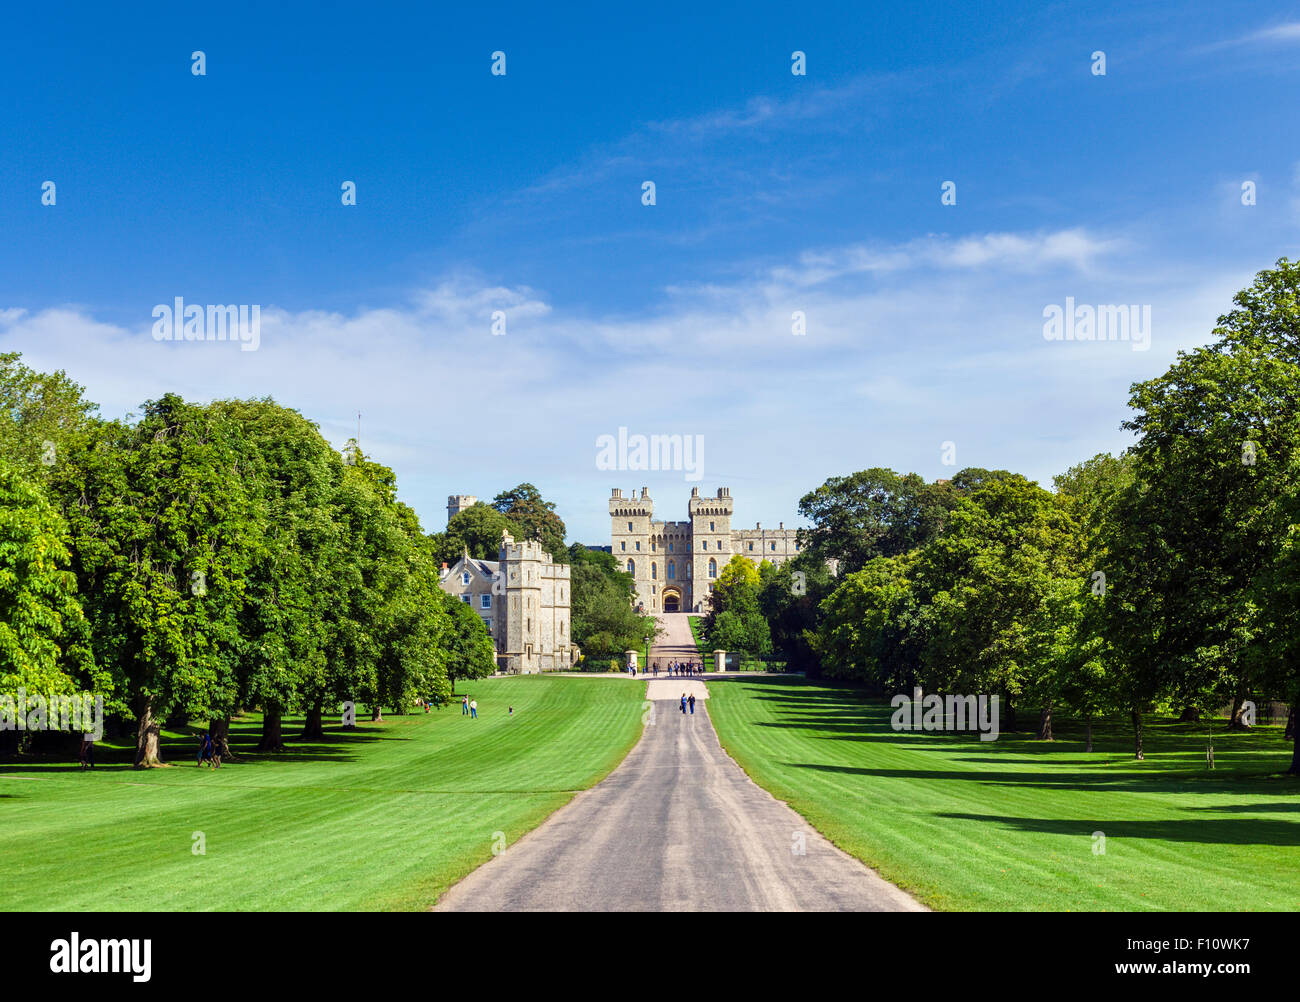 Le Château de Windsor à partir de la Longue Marche, Windsor Great Park, Berkshire, England, UK Banque D'Images